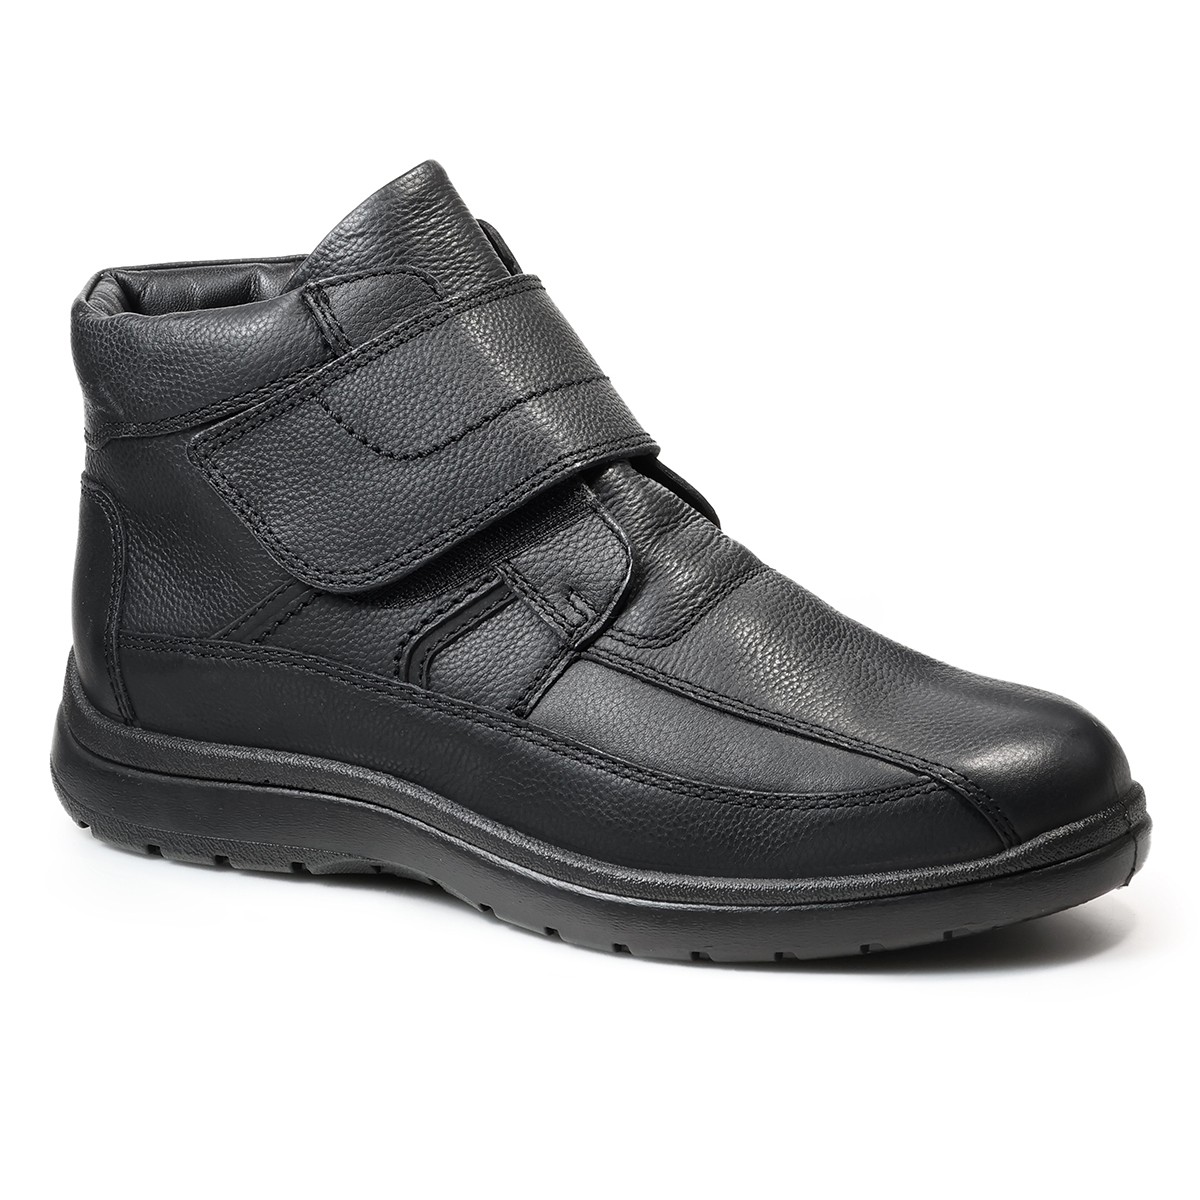 Зимние мужские ботинки Atlanta, Jomos, черные фотографии